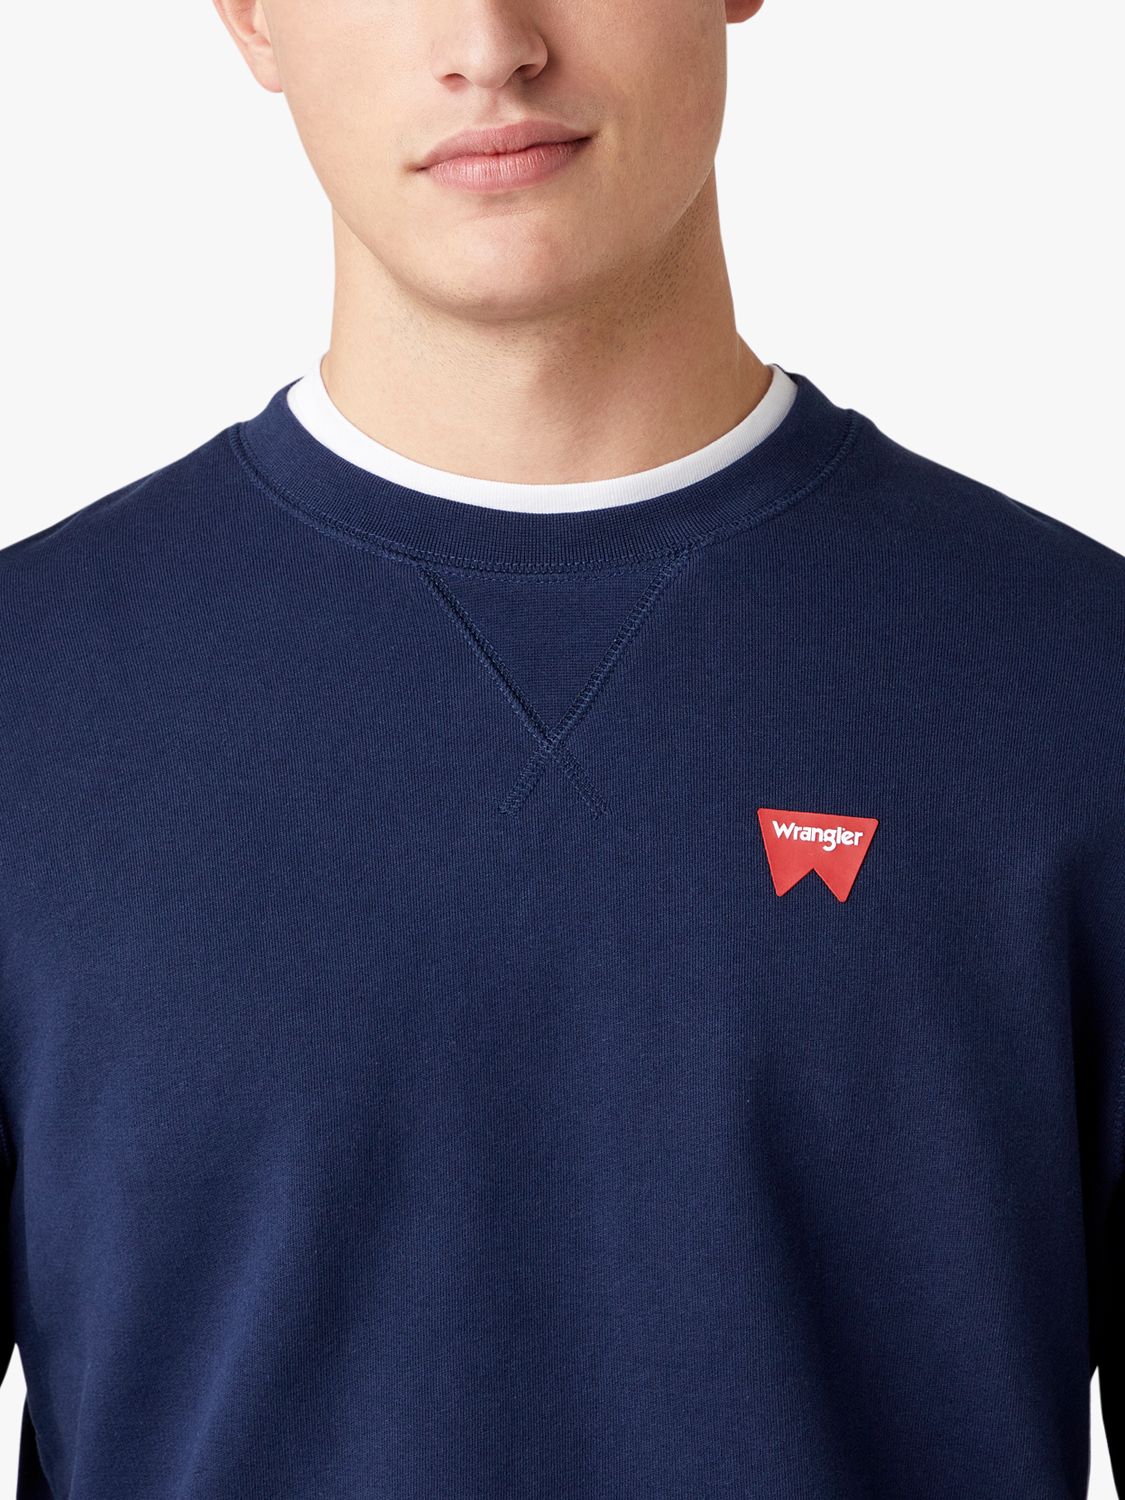 Buy Wrangler Logo Crew Sweatshirt Online at johnlewis.com